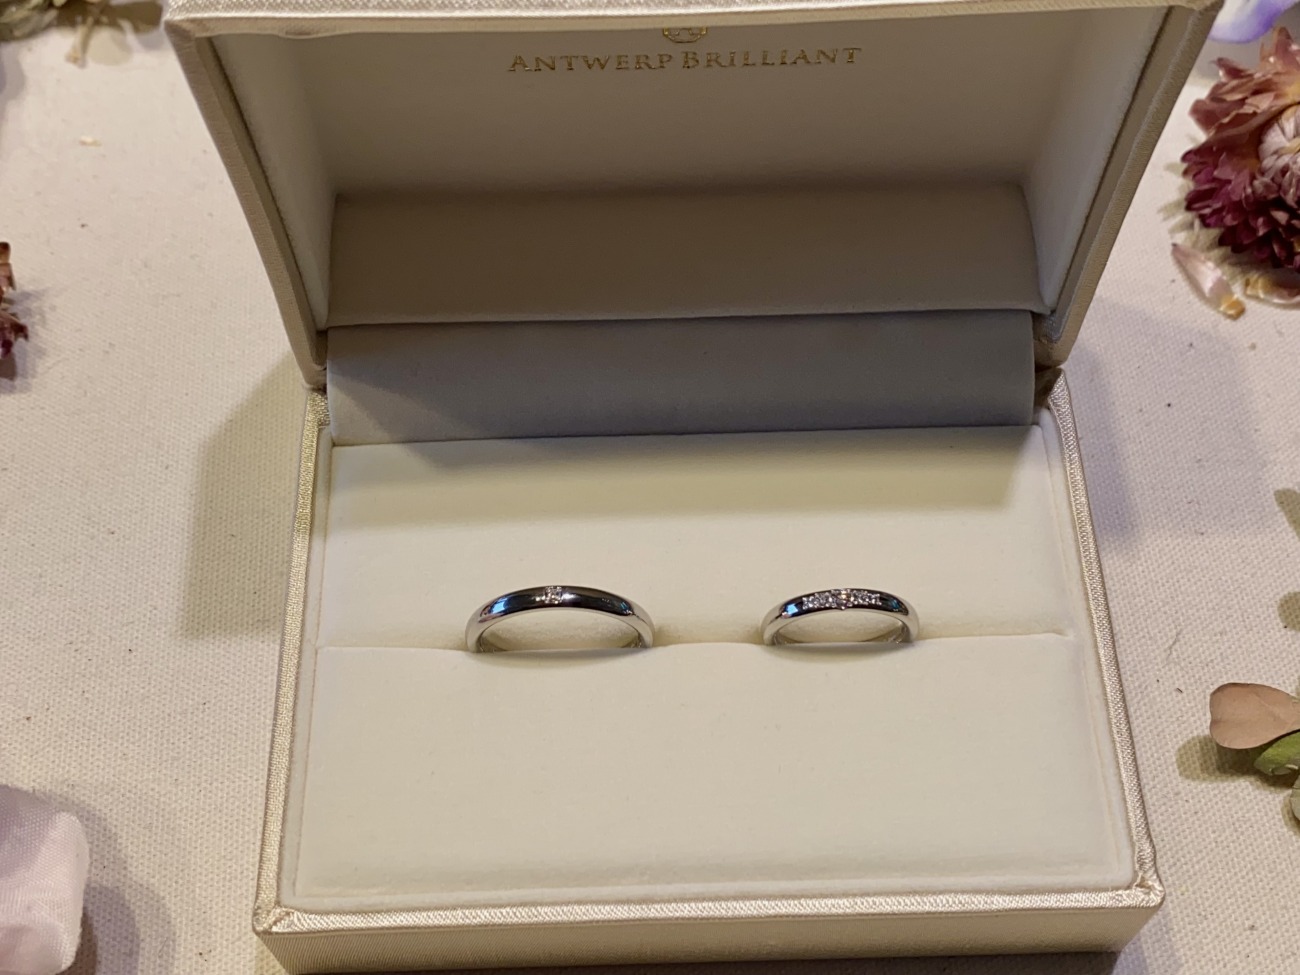 アントワープブリリアントのダイヤモンドが綺麗な結婚指輪